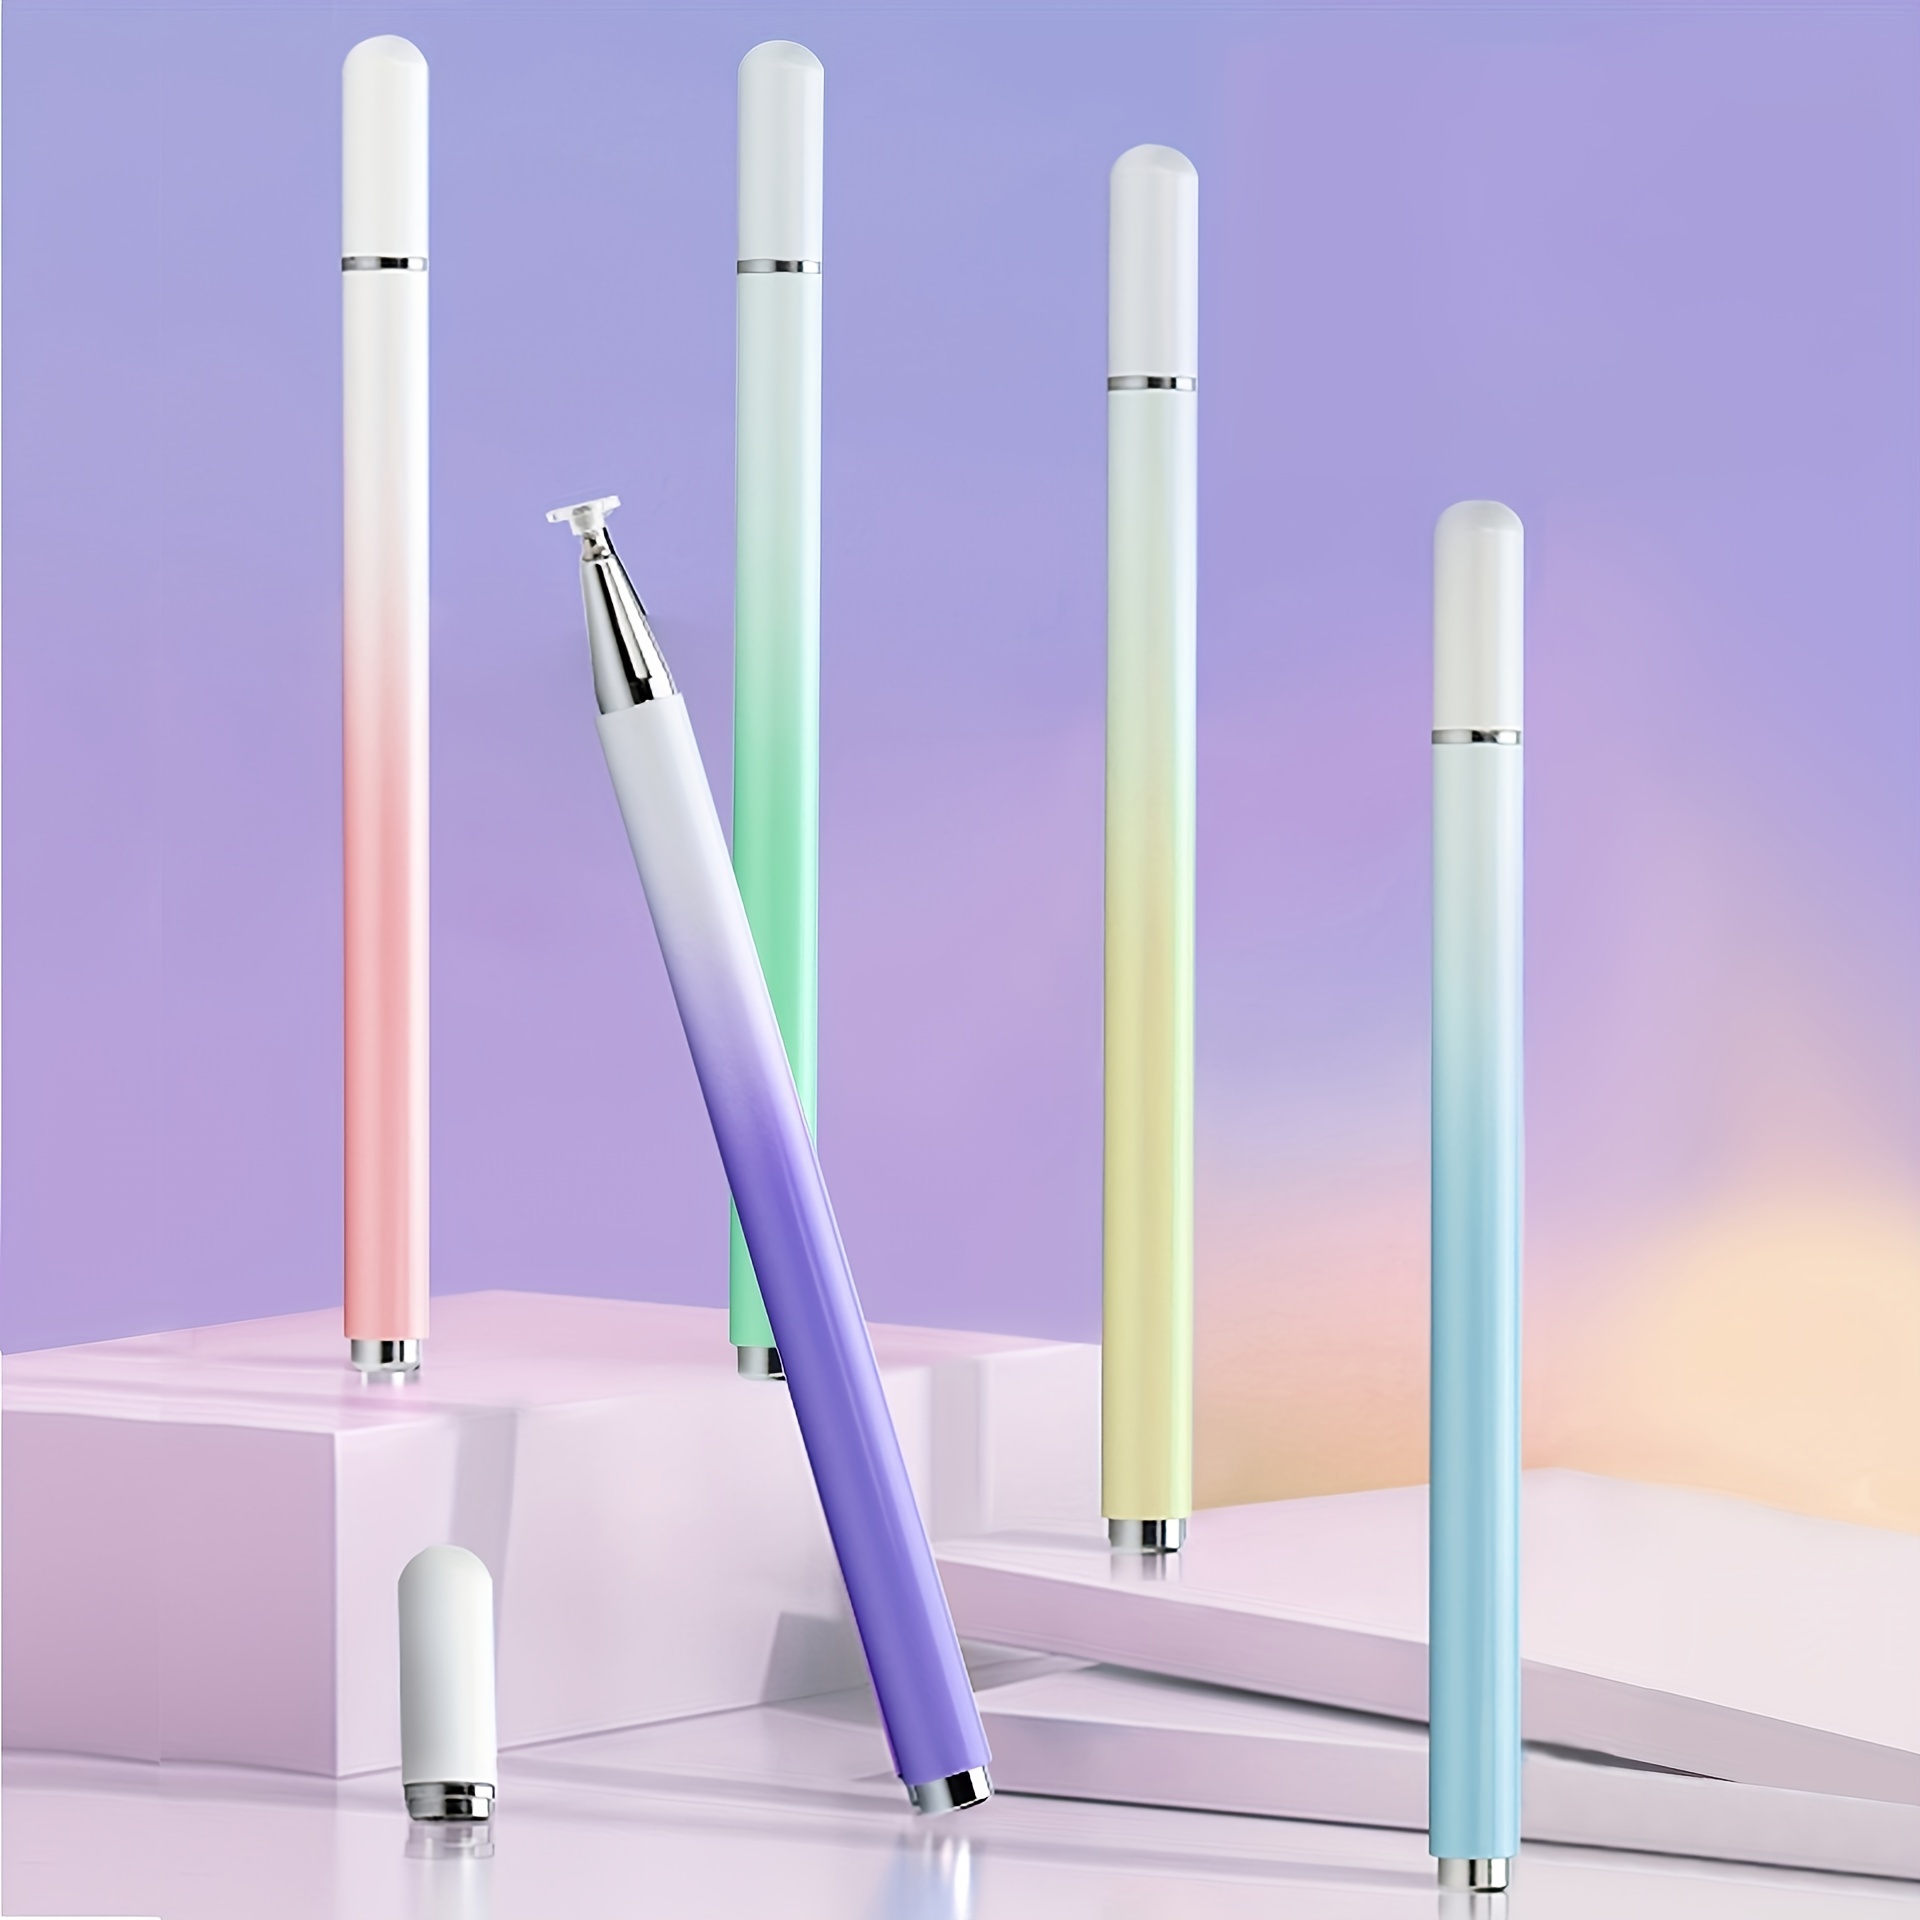 METRO Lápiz capacitivo universal para pantallas táctiles, puntas de fibra  capacitiva de alta sensibilidad, lápiz táctil 2 en 1 para iPad iPhone y